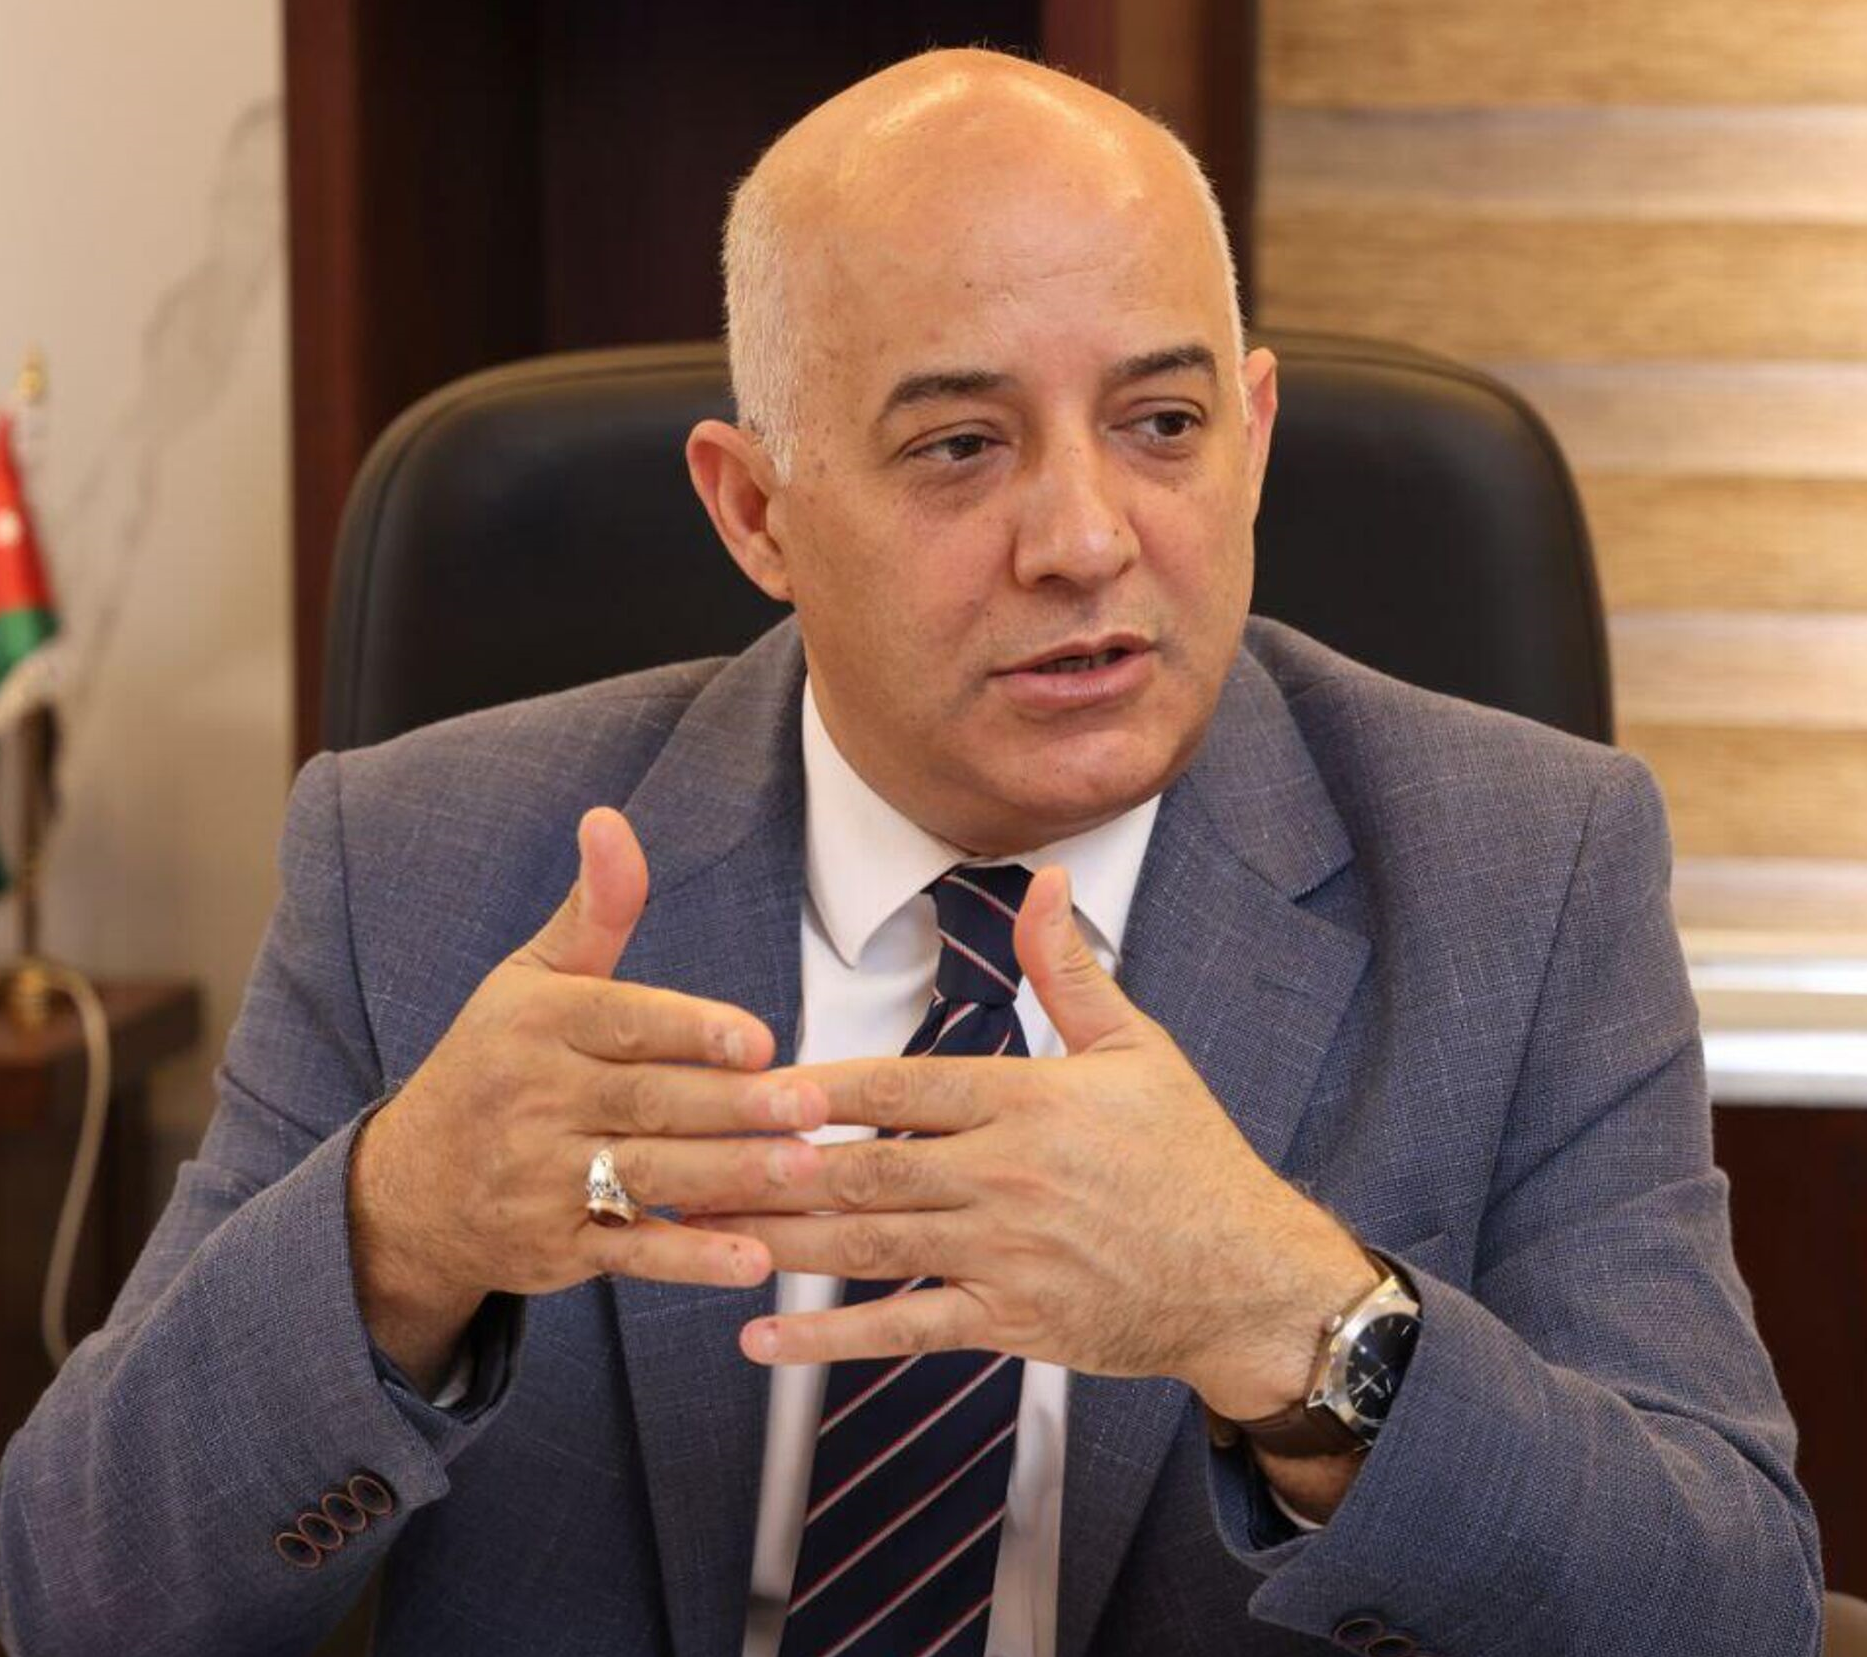 حديث وزير أردني عن غزة والمقاومة يثير غضبا.. مهند المبيضين يستفز الأردنيين والعرب